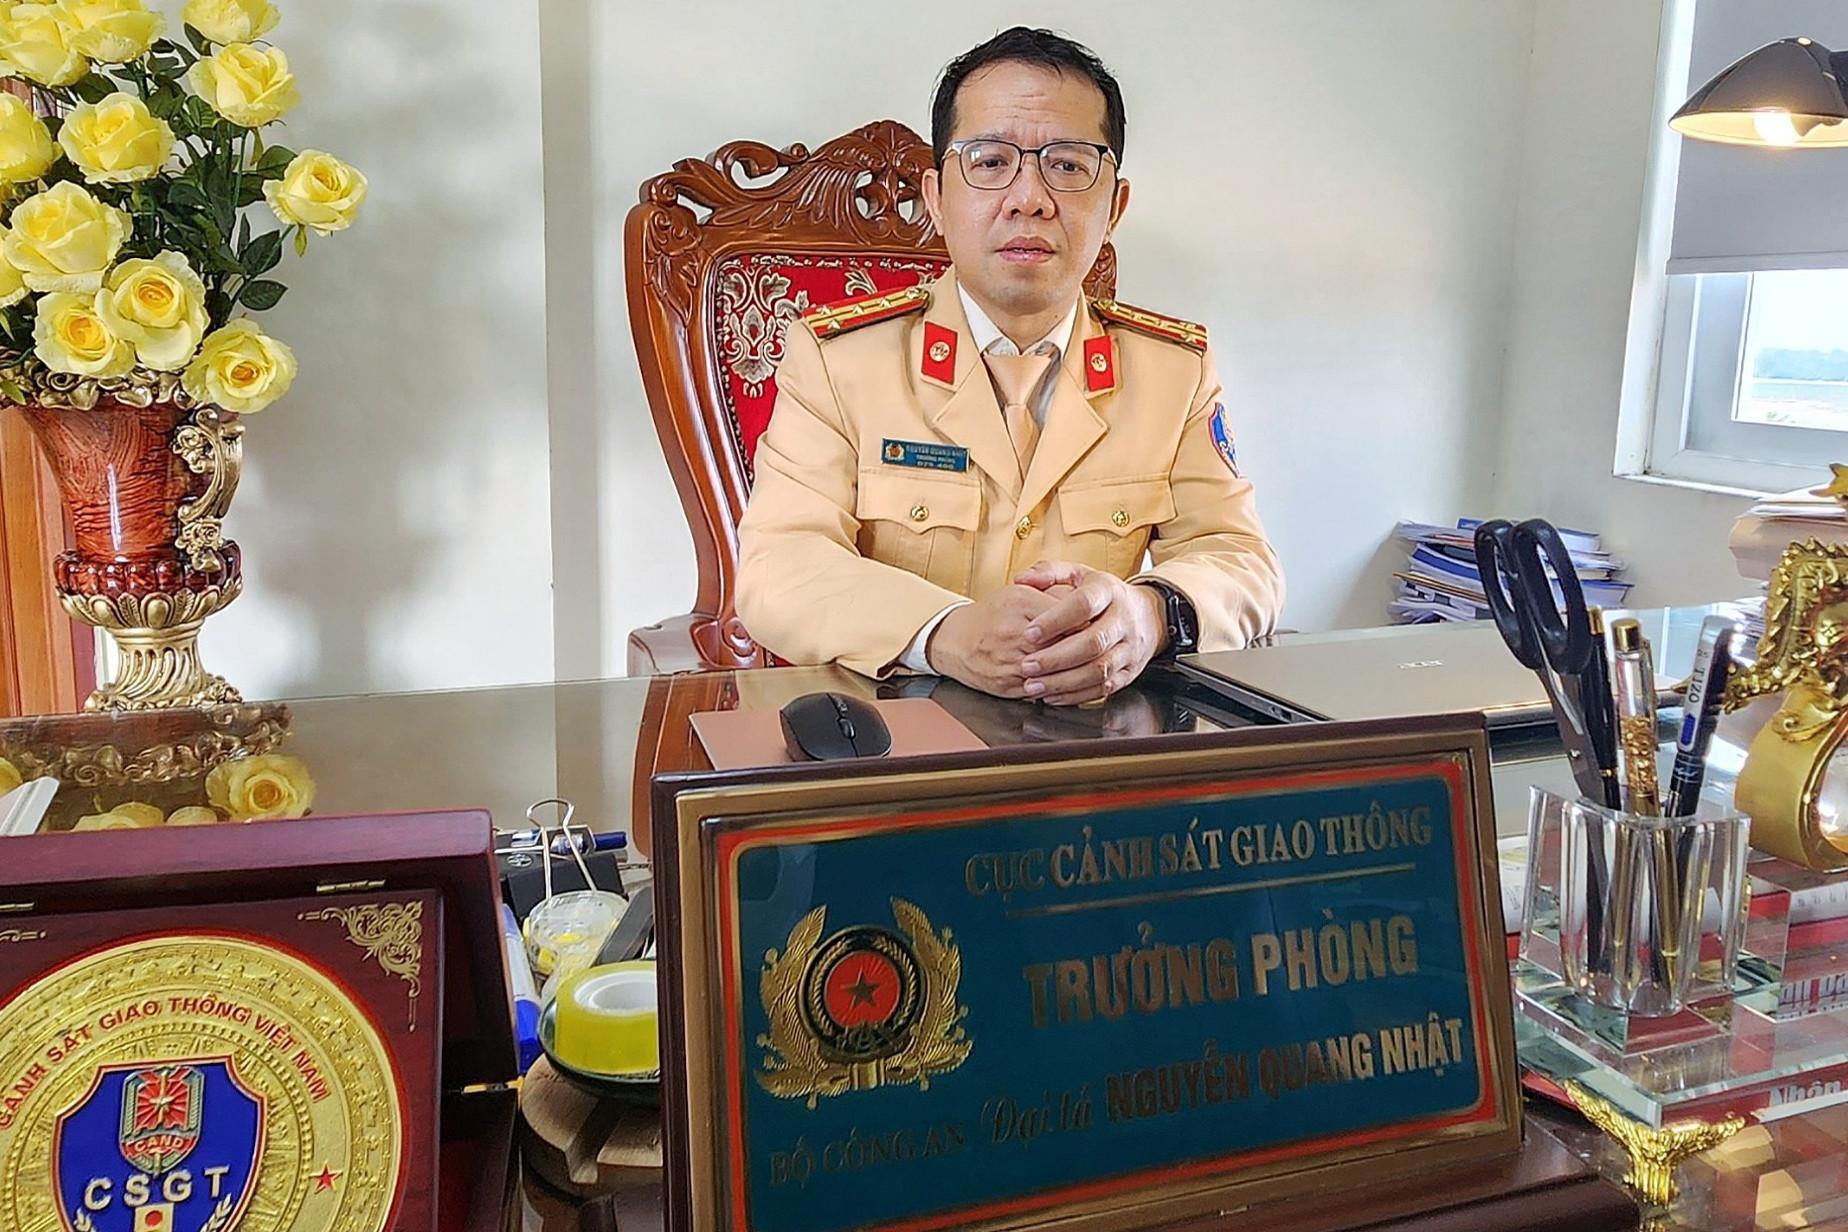 Đại tá Nguyễn Quang Nhật: CSGT xử lý nồng độ cồn "không phải là cỗ máy"